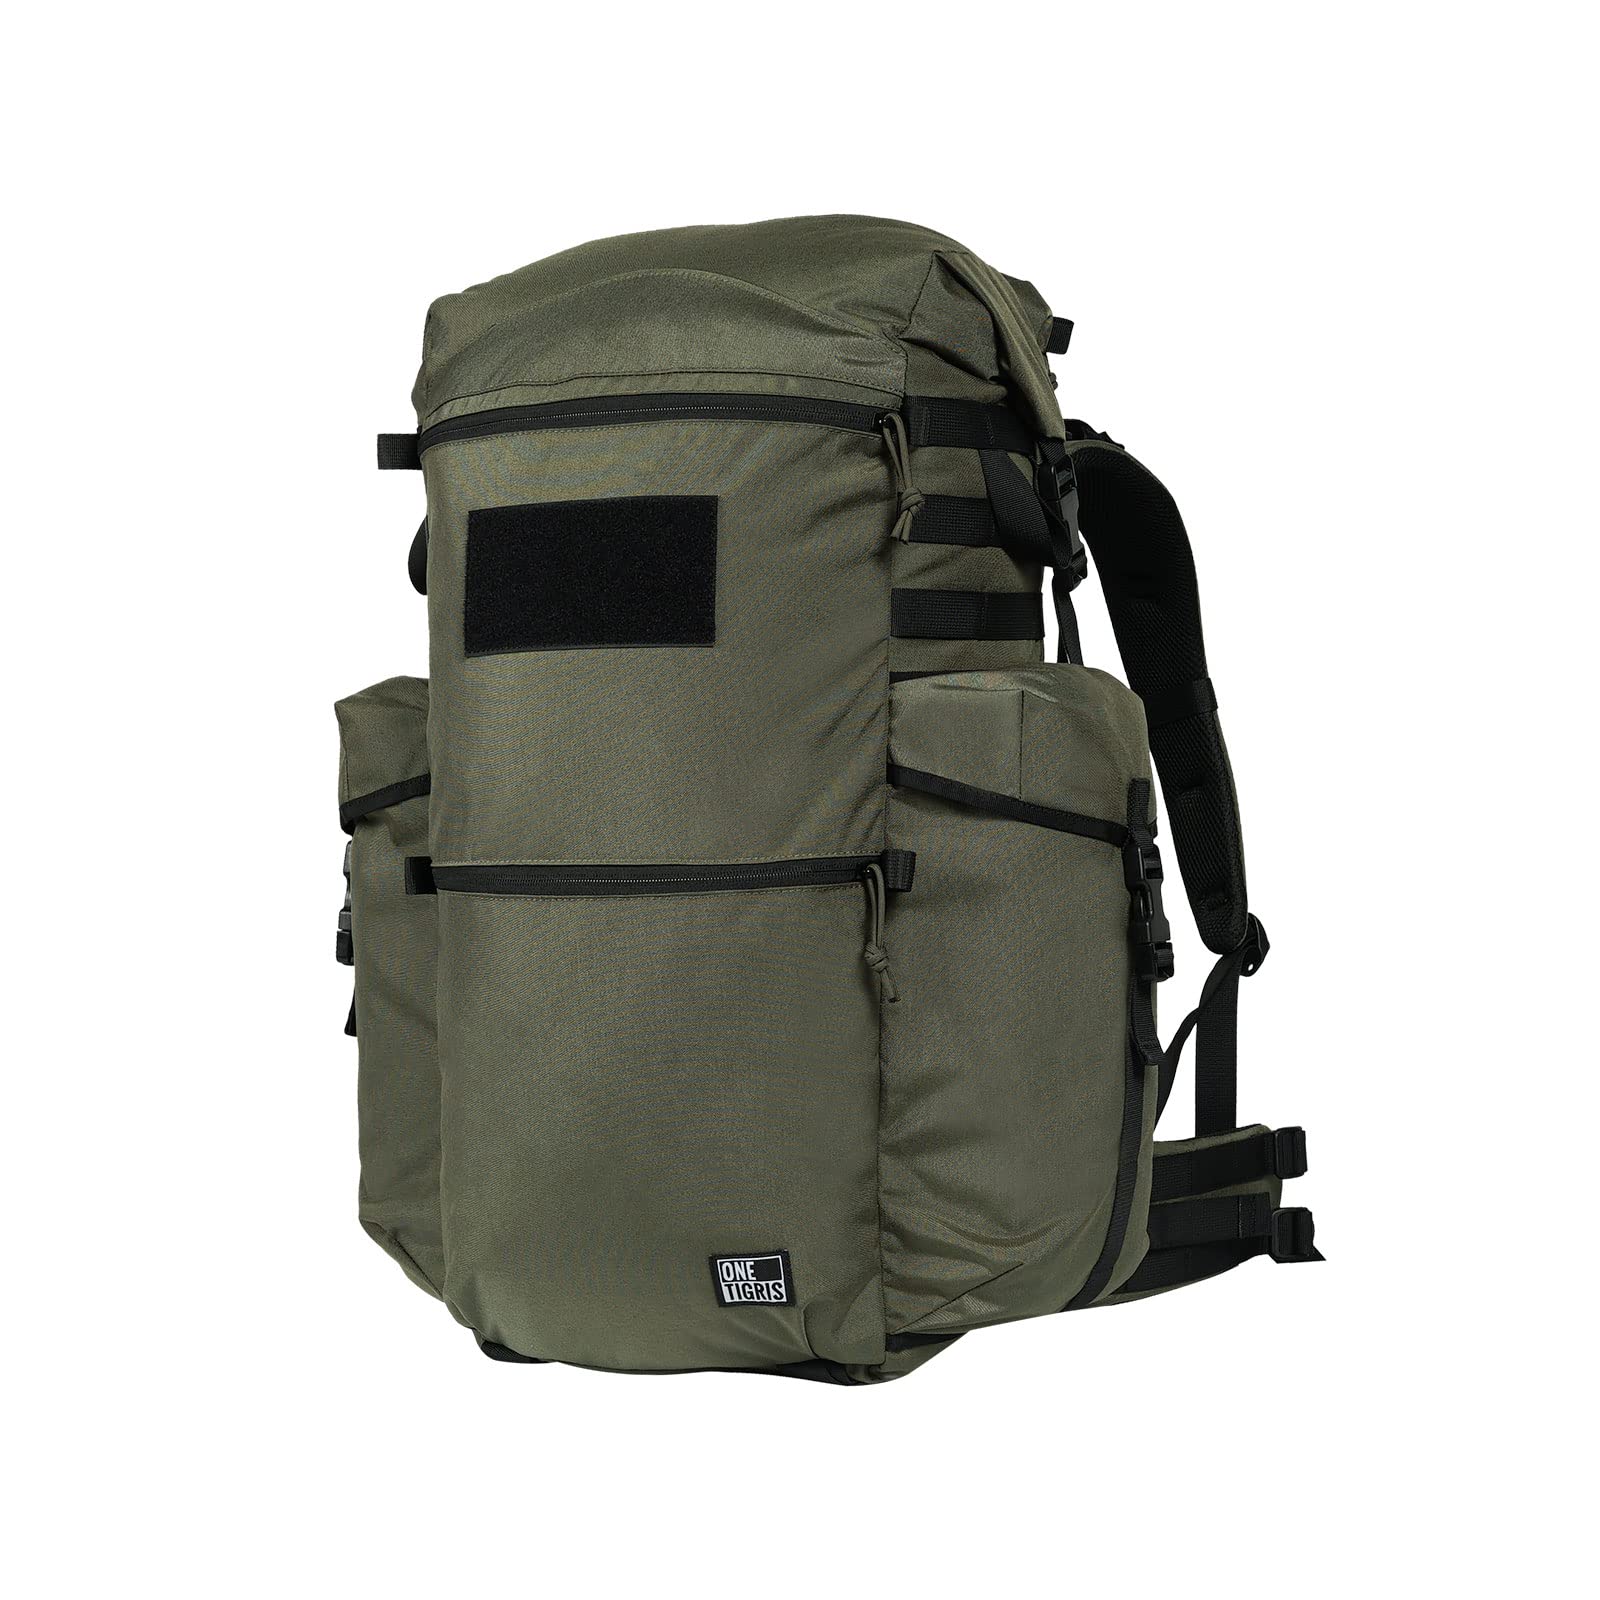 送料無料OneTigris WILD ROCKET 45L Backpack - Durable 500D Cordura Nylon ALICE Pack Hiking Daypack for Outdoor Adventures